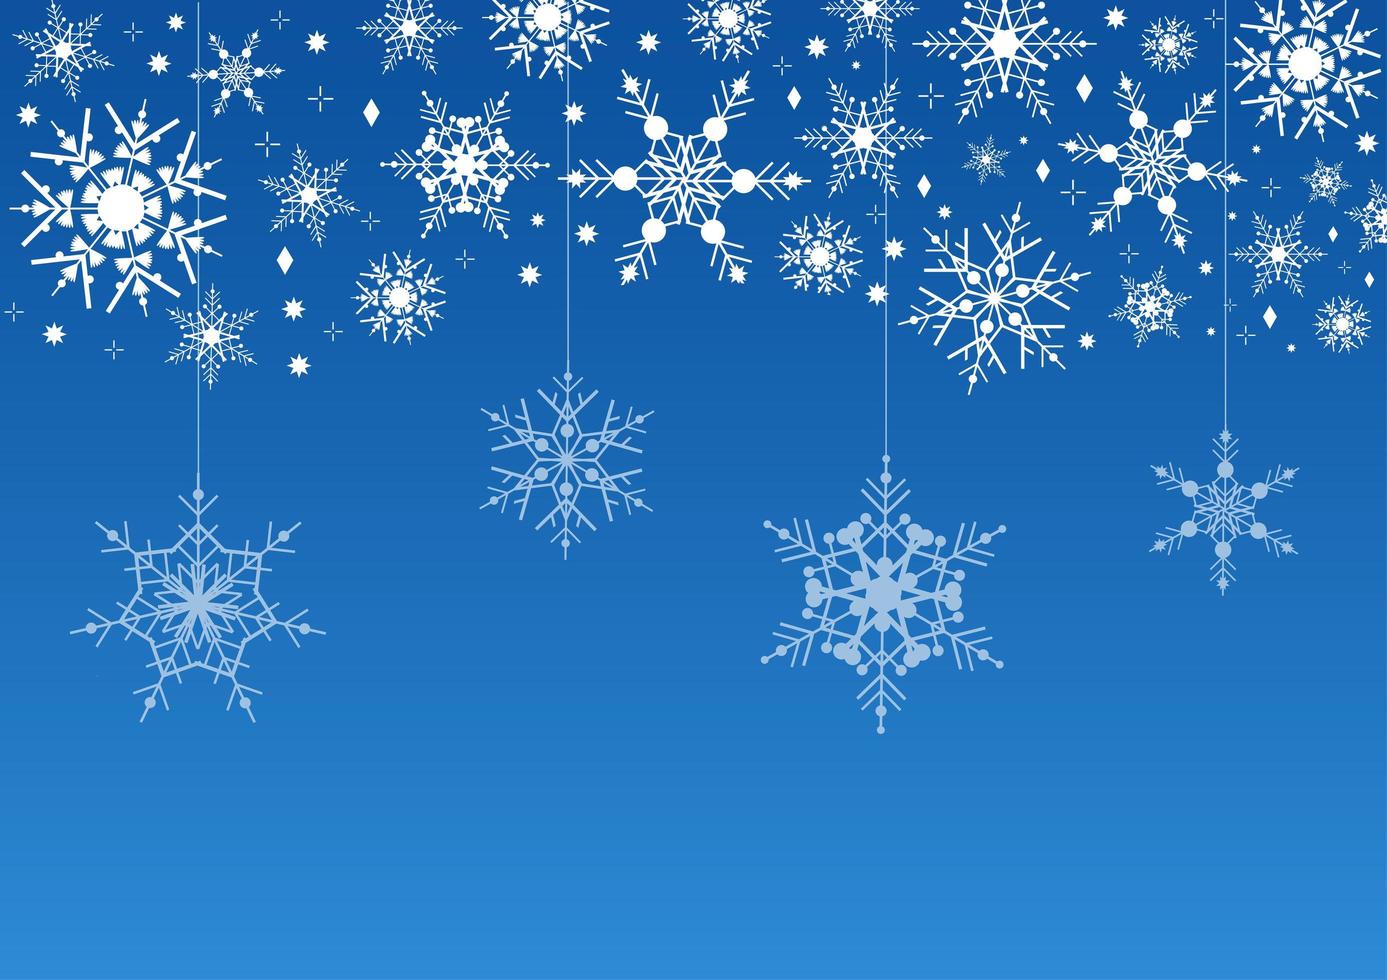 sfondo blu invernale con ghirlanda di fiocchi di neve. cornice di neve per buon natale e felice anno nuovo per banner, biglietti, cartoline, eventi, inviti e design. elegante illustrazione vettoriale geometrica